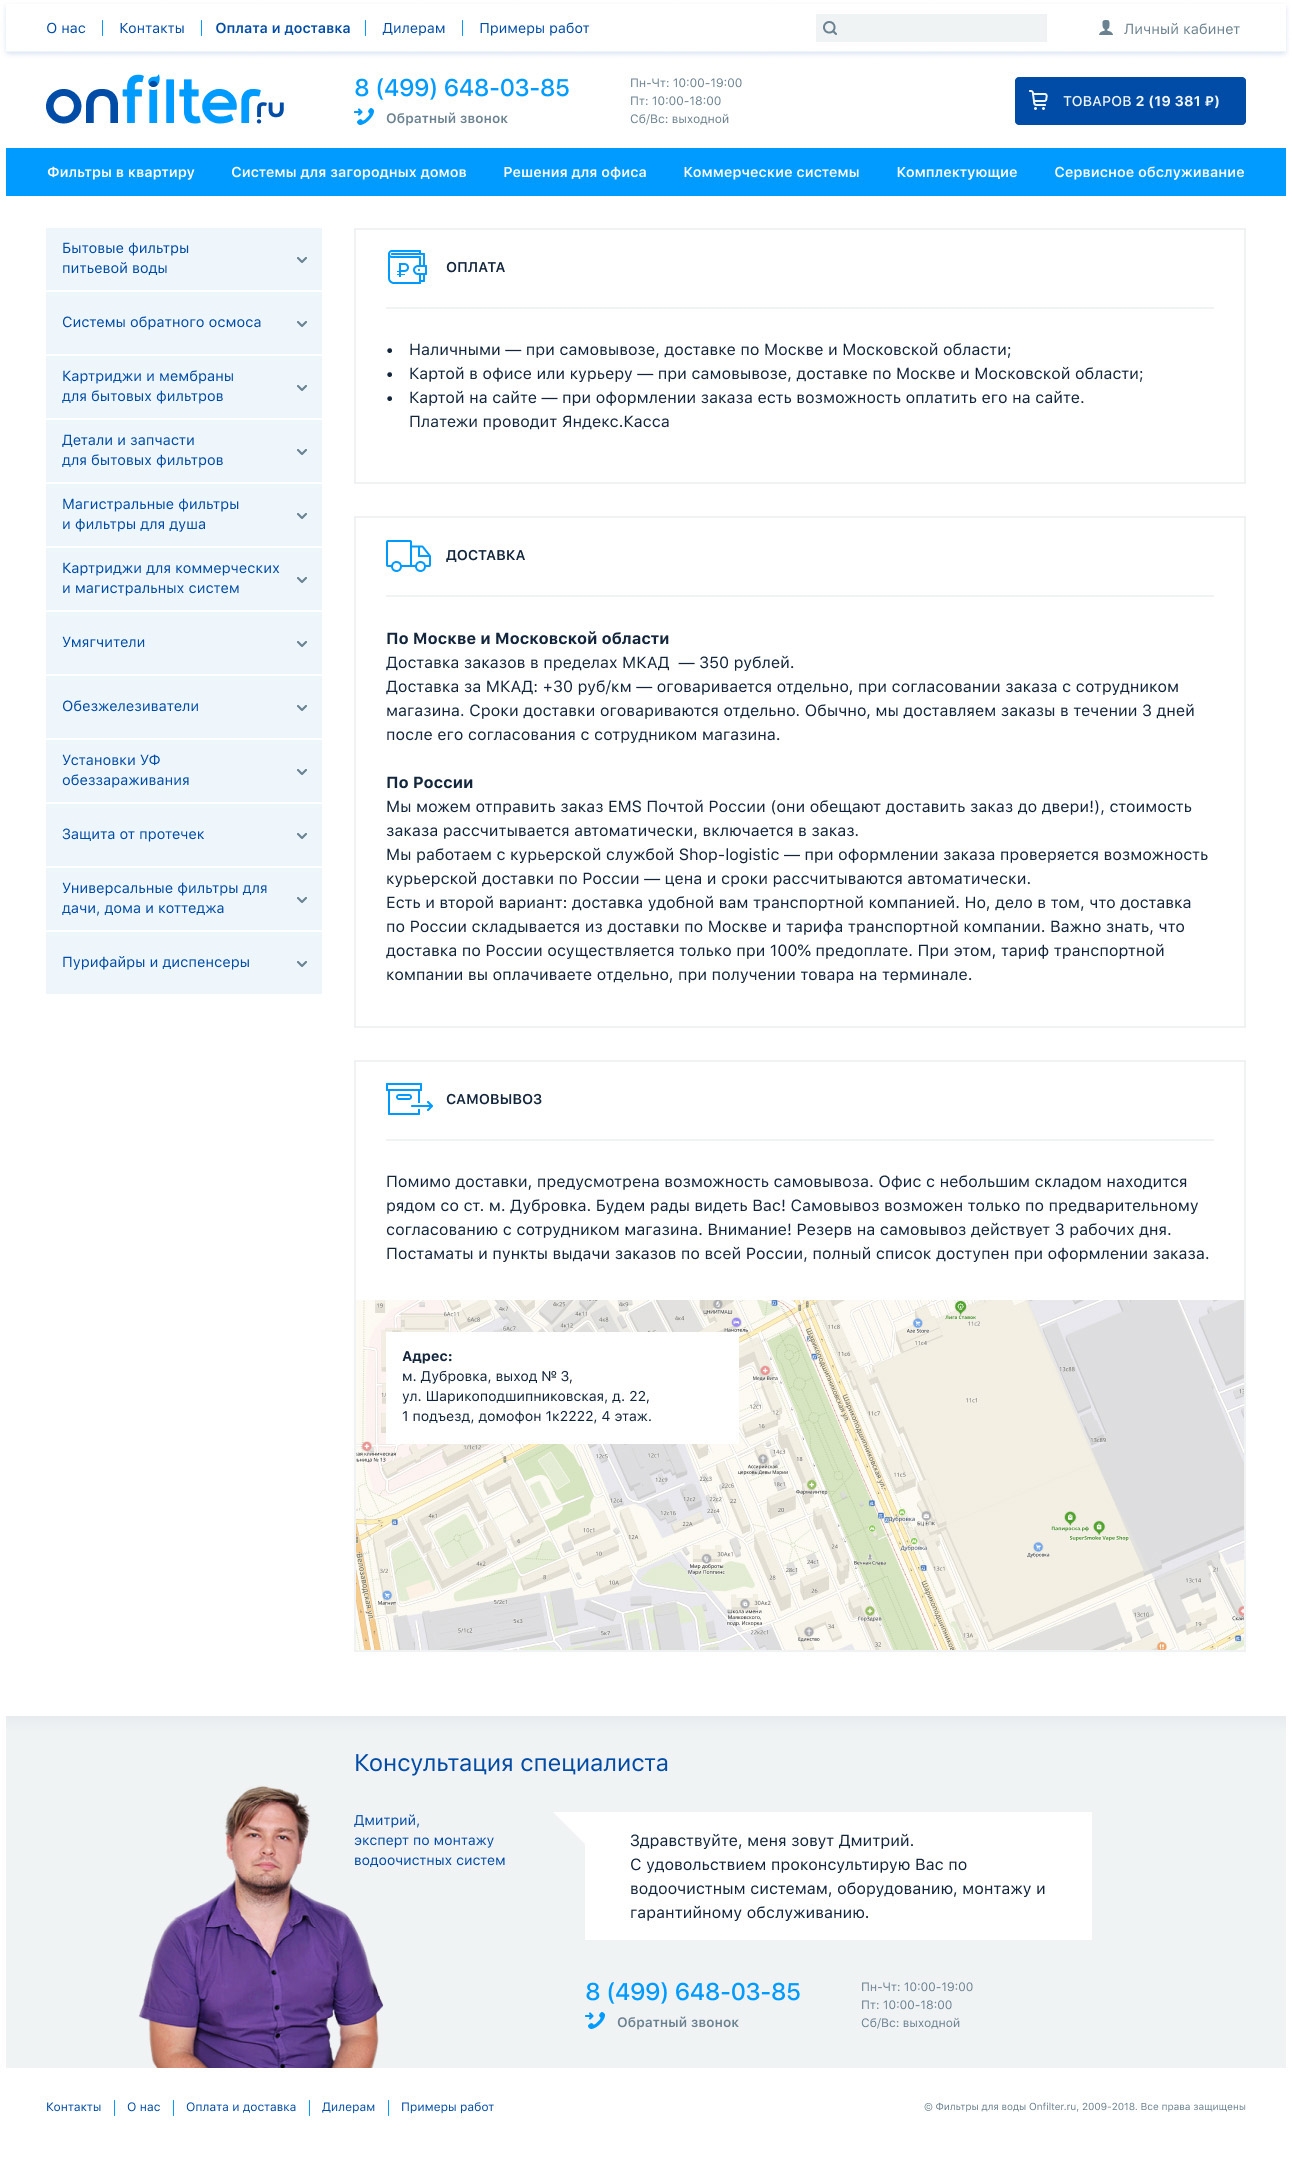 Макет информационной страницы об оплате и доставке сайта onfilter.ru на платформе insales